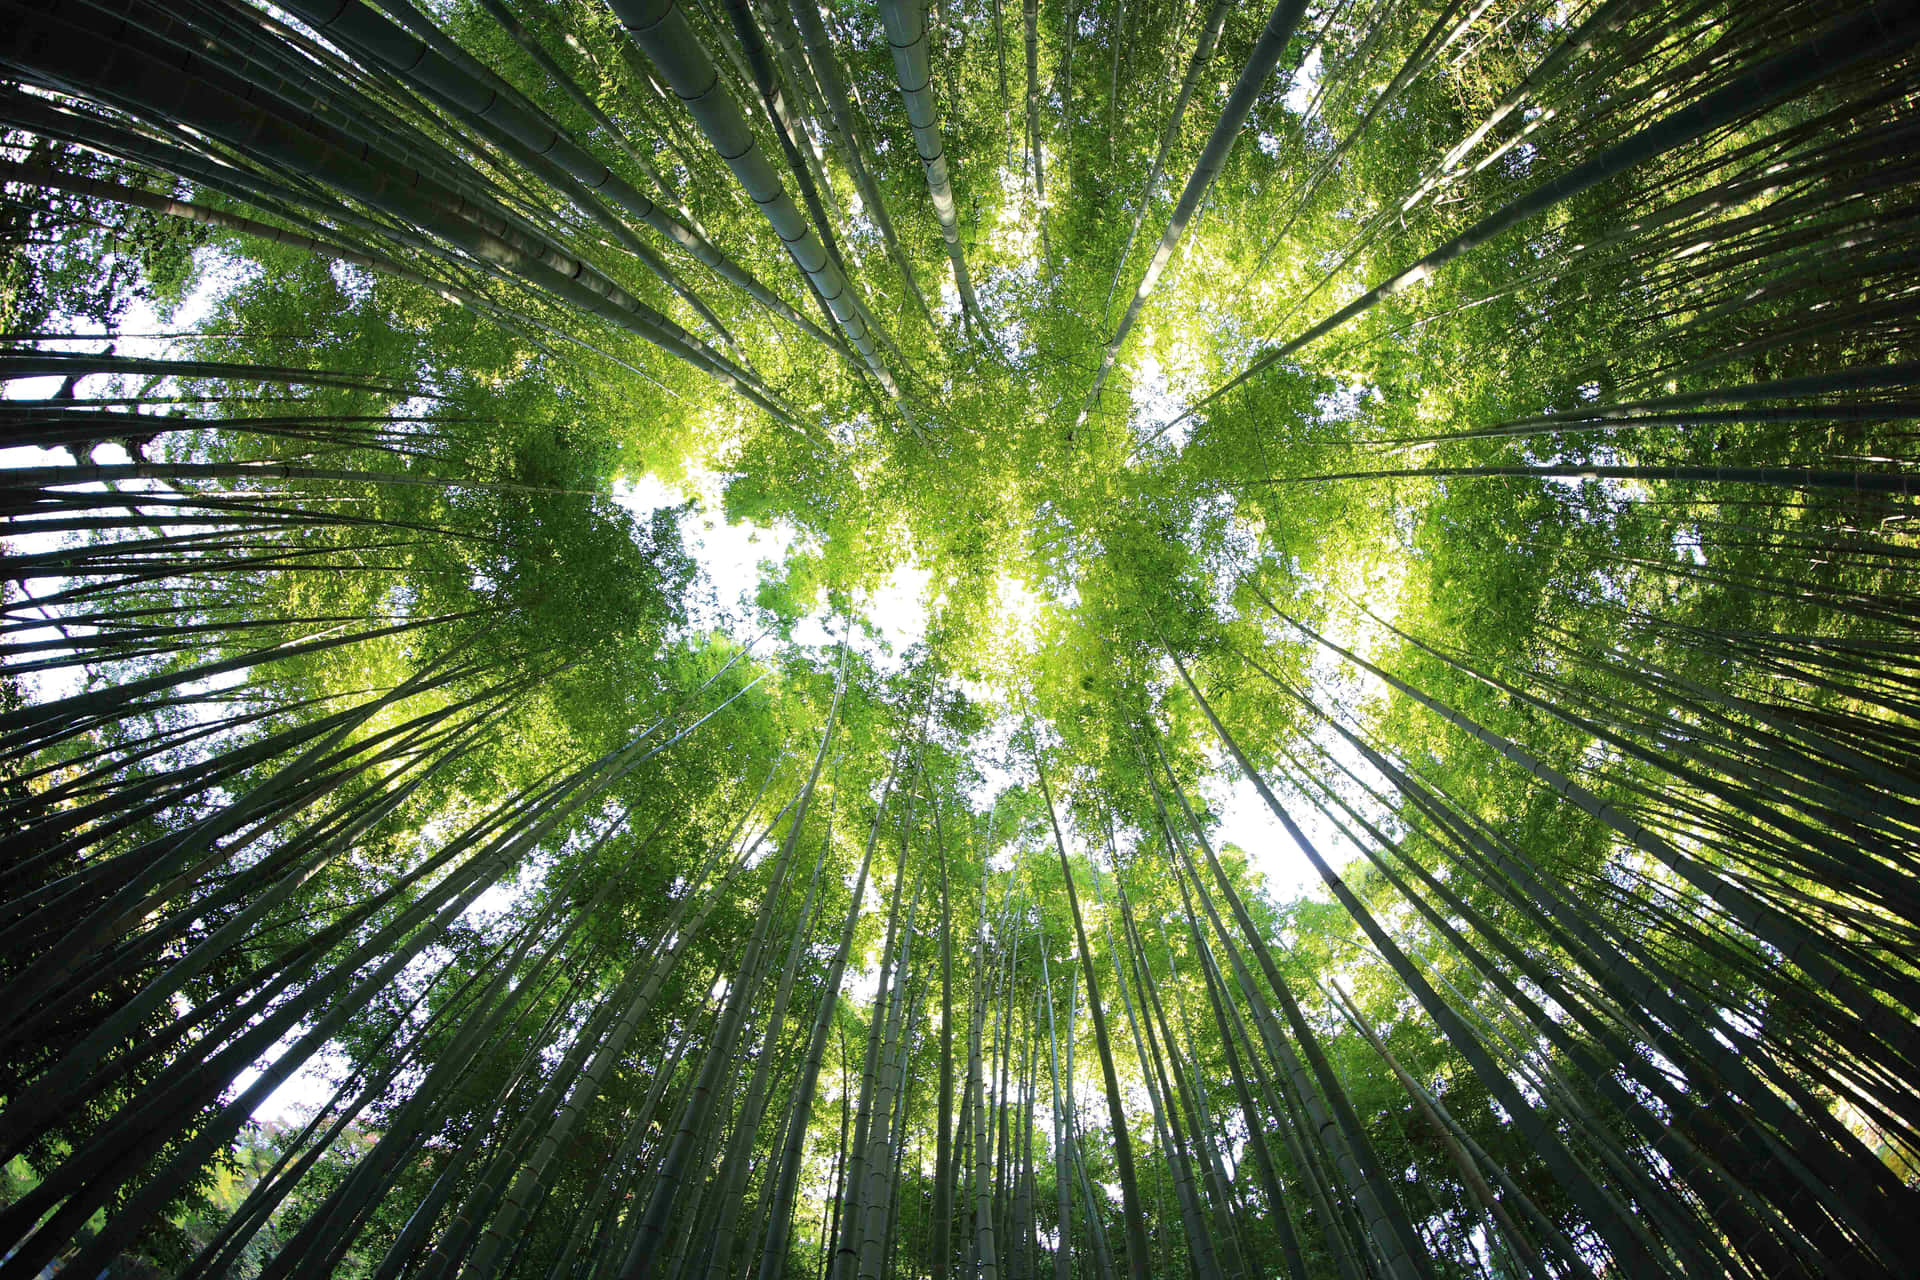 Unavista De Un Bosque De Bambú Con Árboles Verdes.